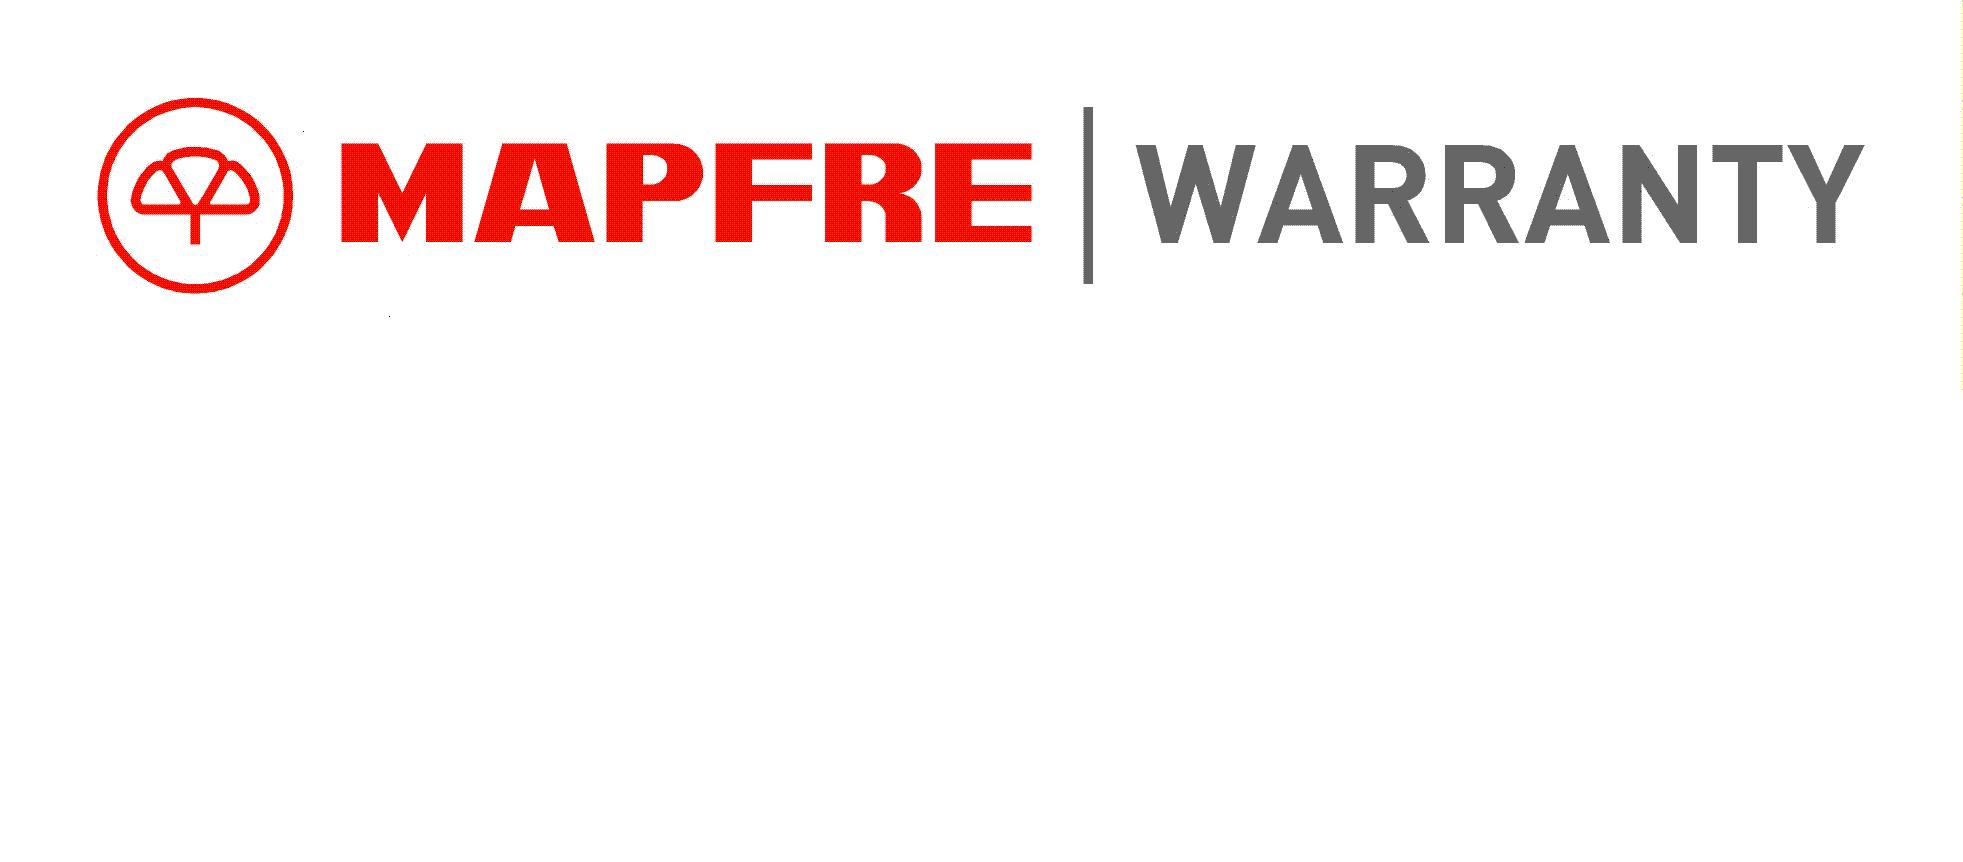 Компания MAPFRE WARRANTY договорилась с  RENAULT в России  в отношении реализации гарантийных продуктов для авто с пробегом